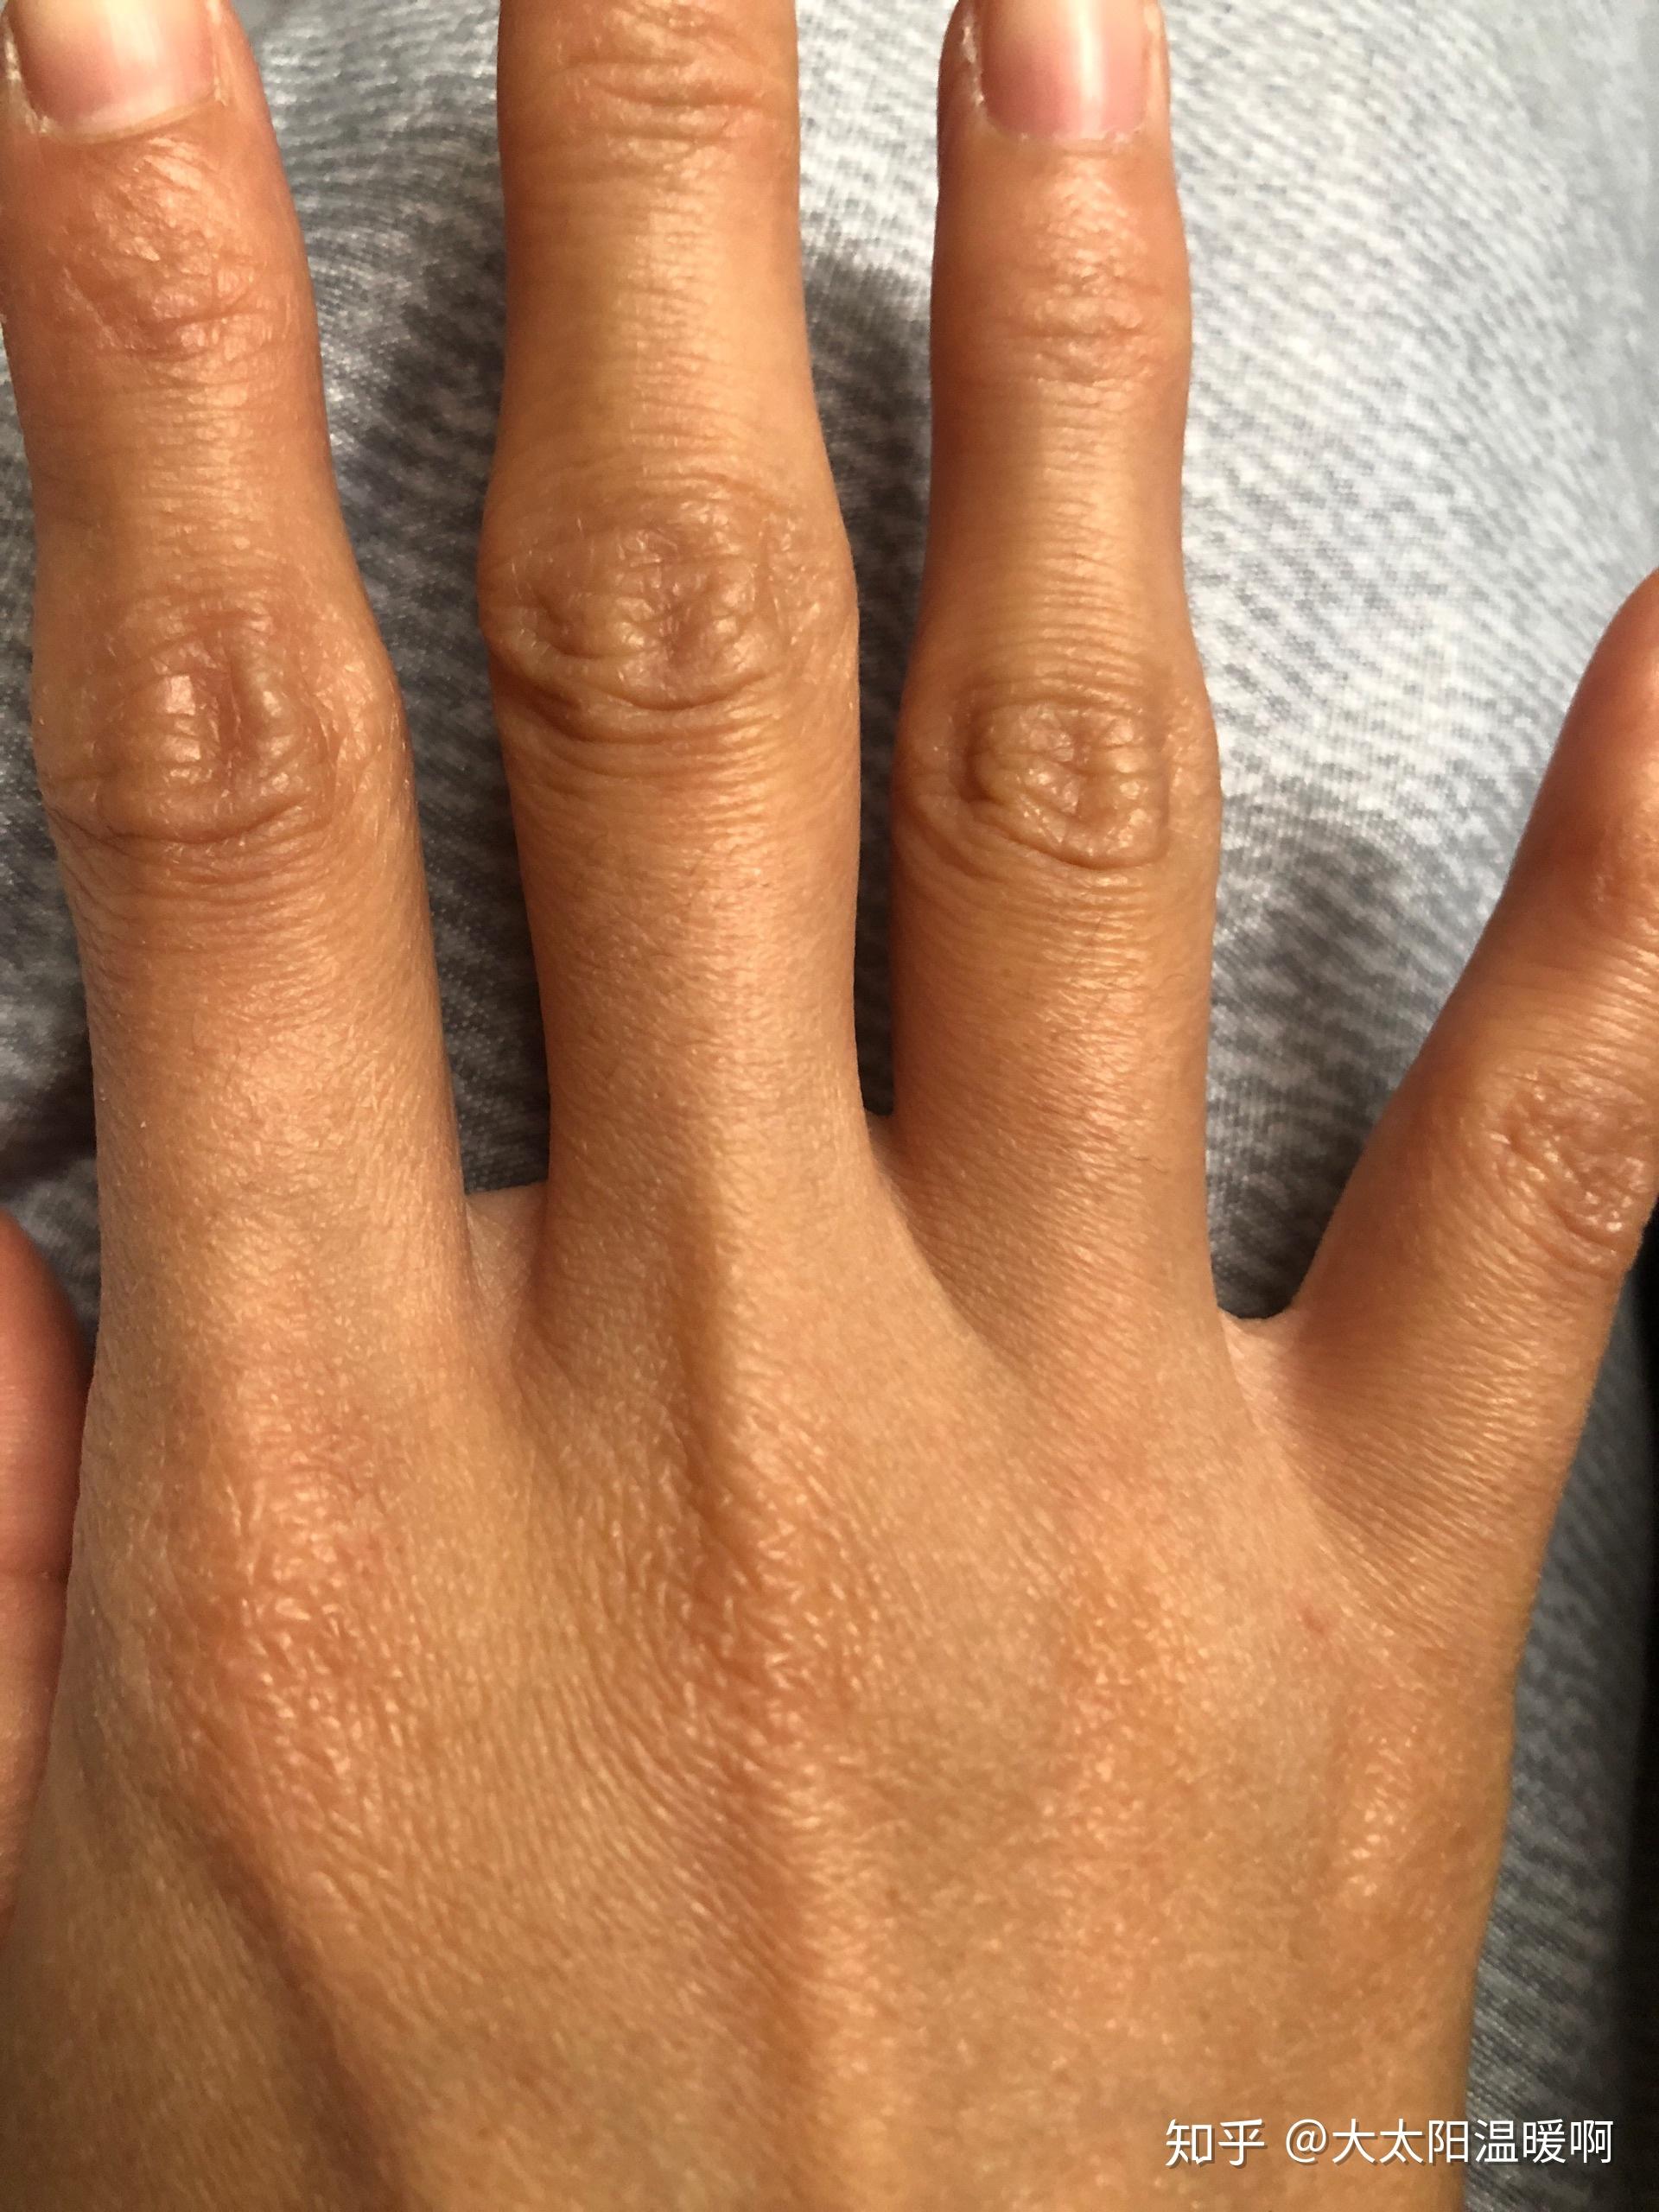 经常掰指节手指关节变粗且关节处皮肤变黑怎么处理可以还原吗